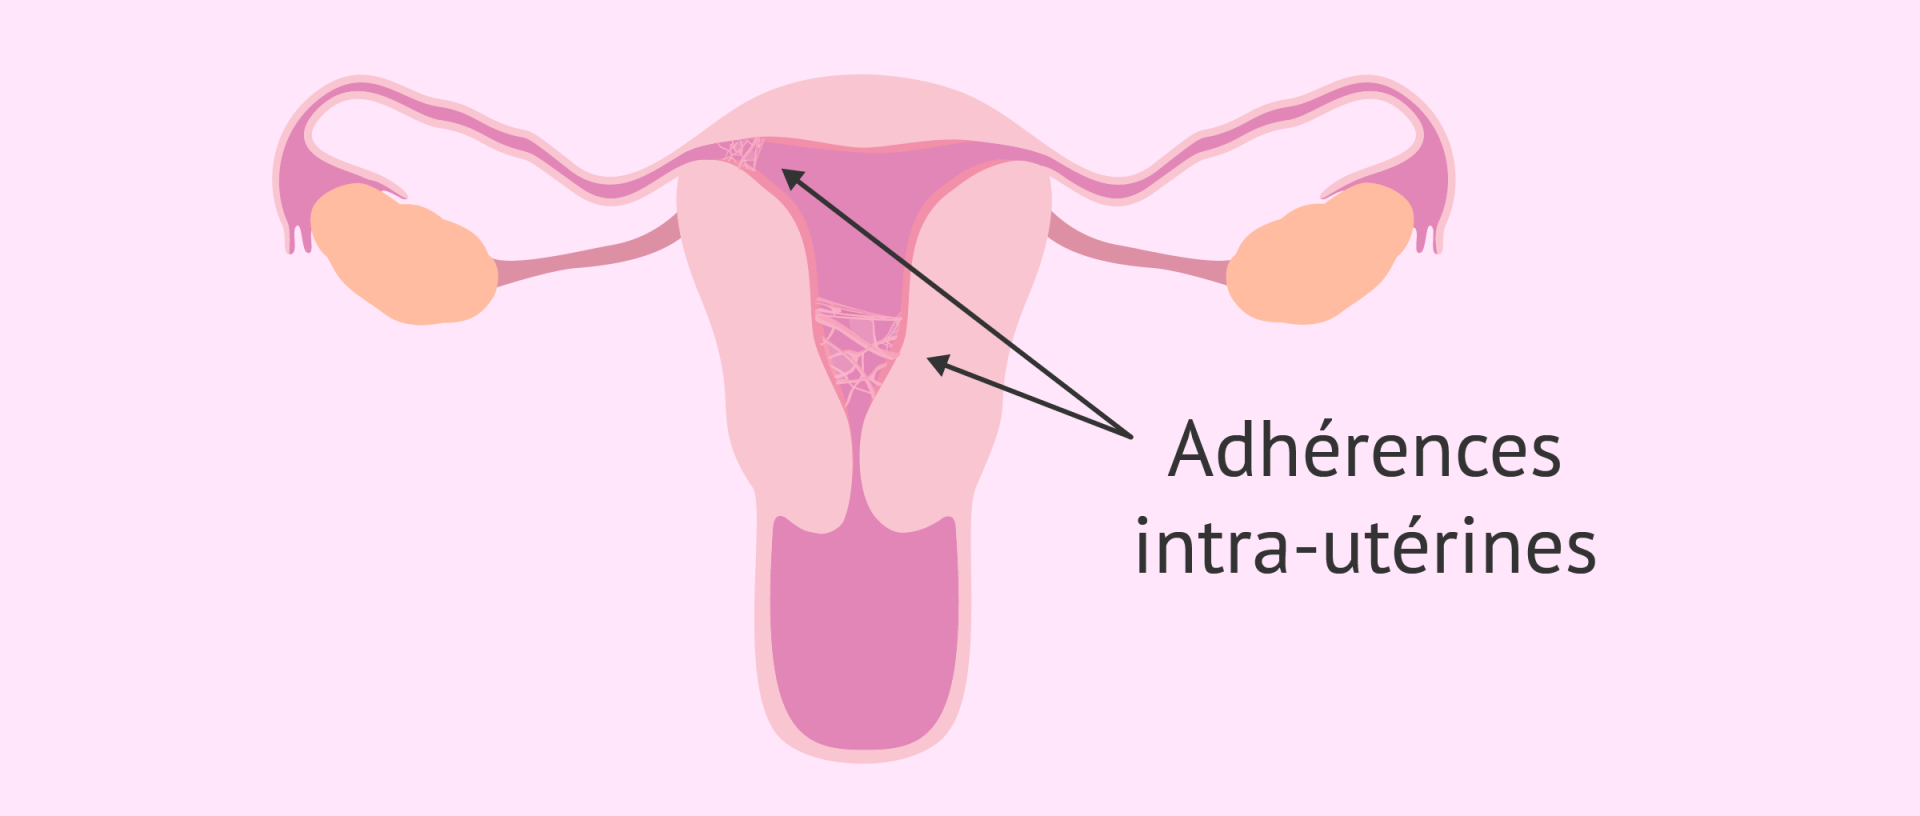 Synechies uterines1